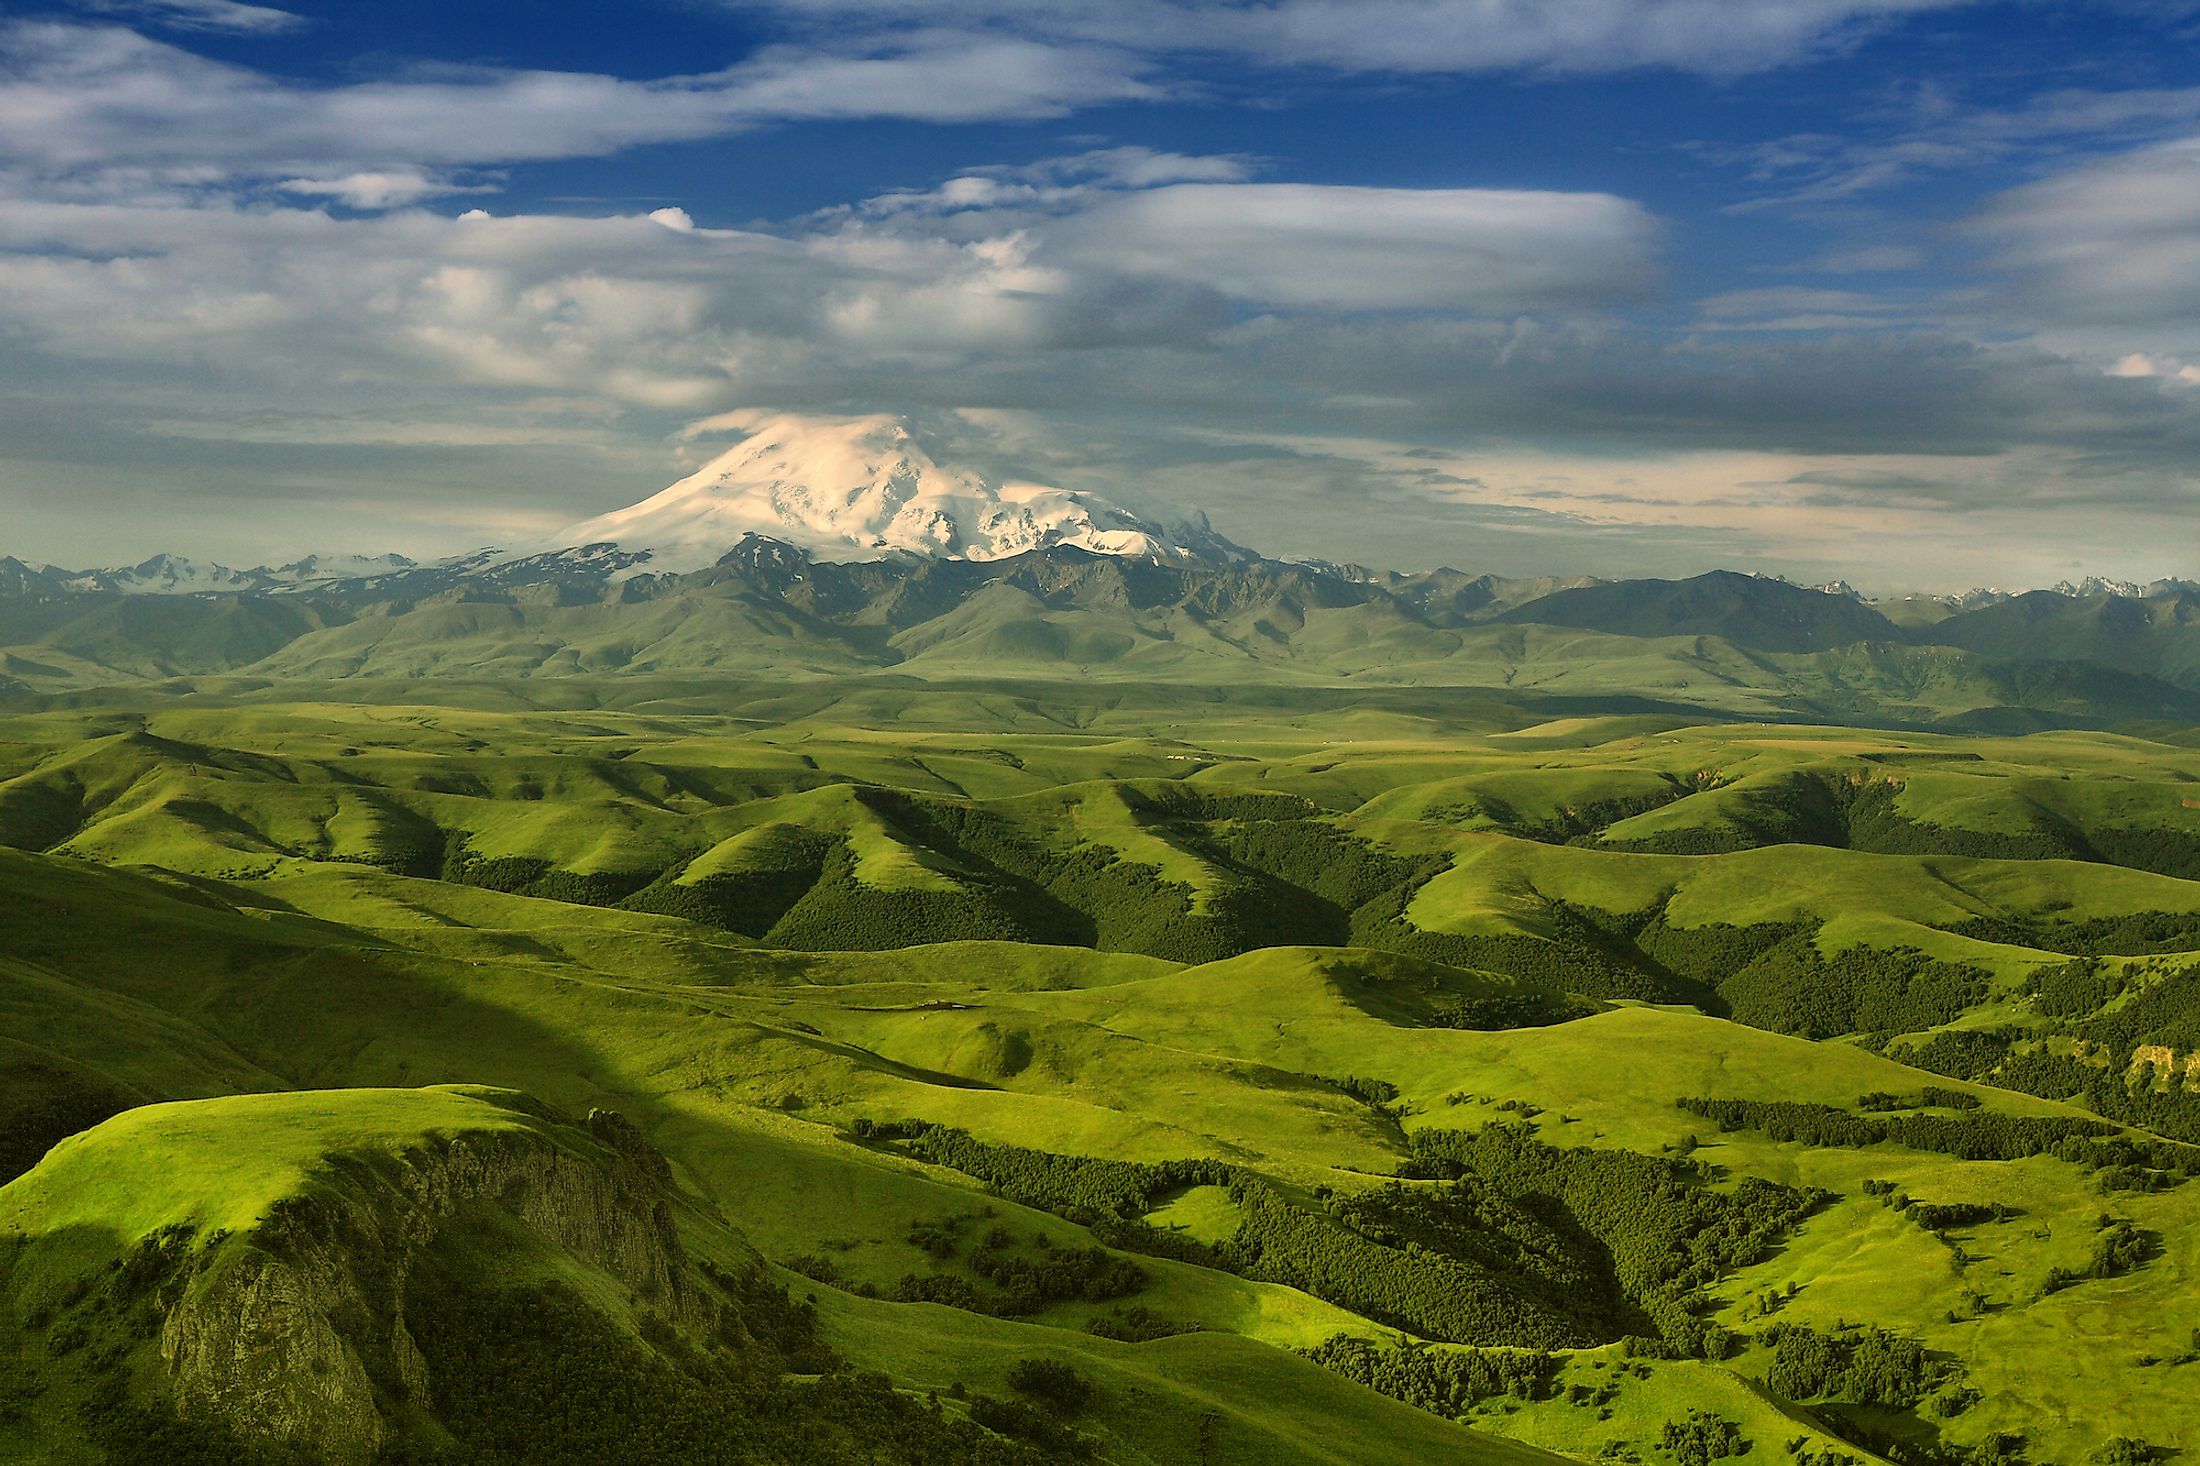 Mount Elbrus in the Caucasus.